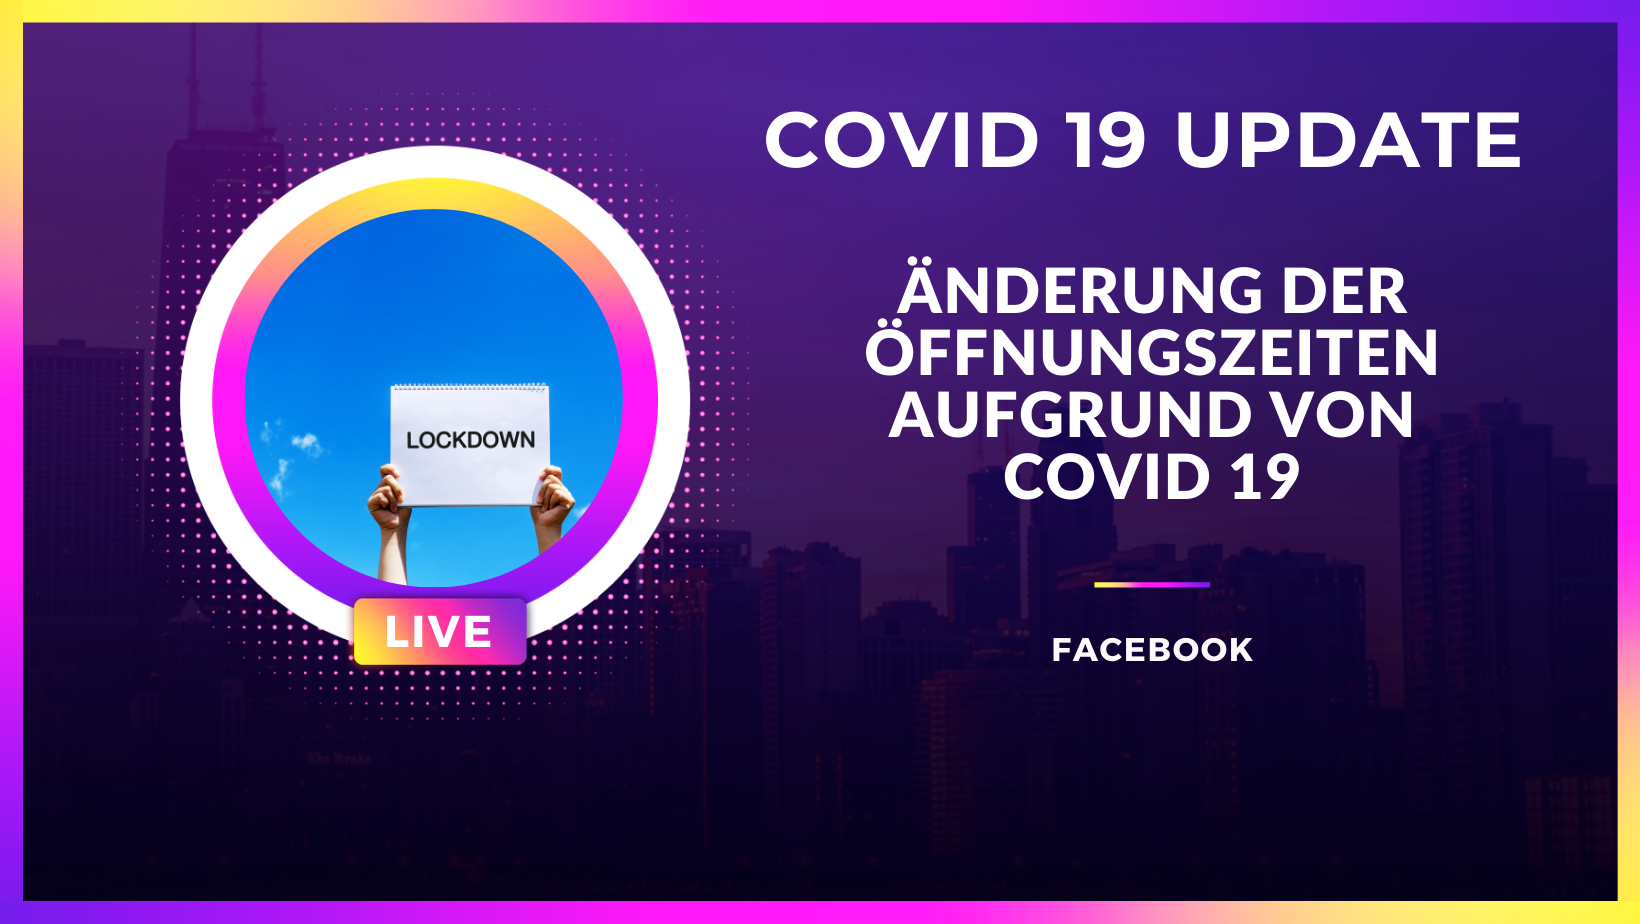 COVID Update auf Facebook Seiten: Vorübergehende Änderung der Öffnungszeiten